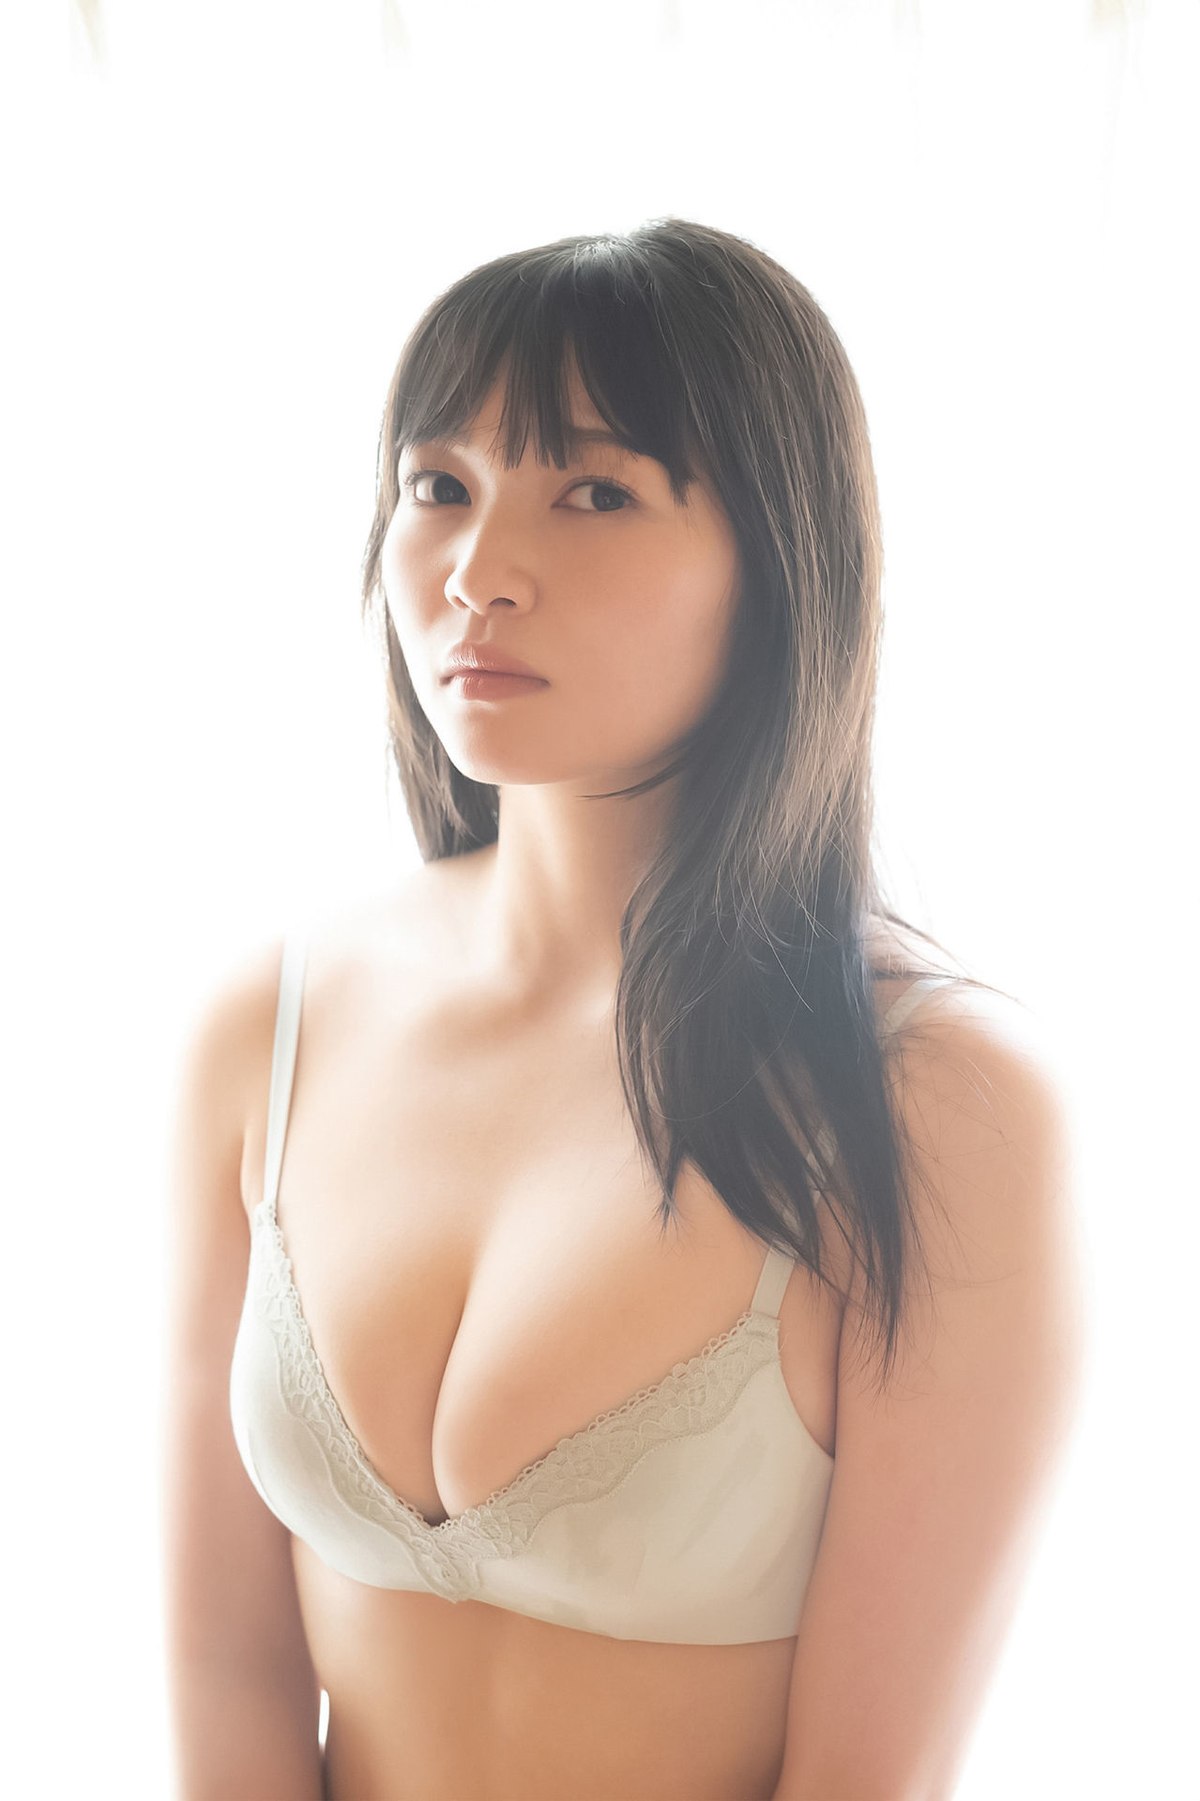 Weekly Gendai Photobook 2023 07 09 Suzuka Sayama 佐山すずか Body Wet In The Shower 0069 3279142971.jpg